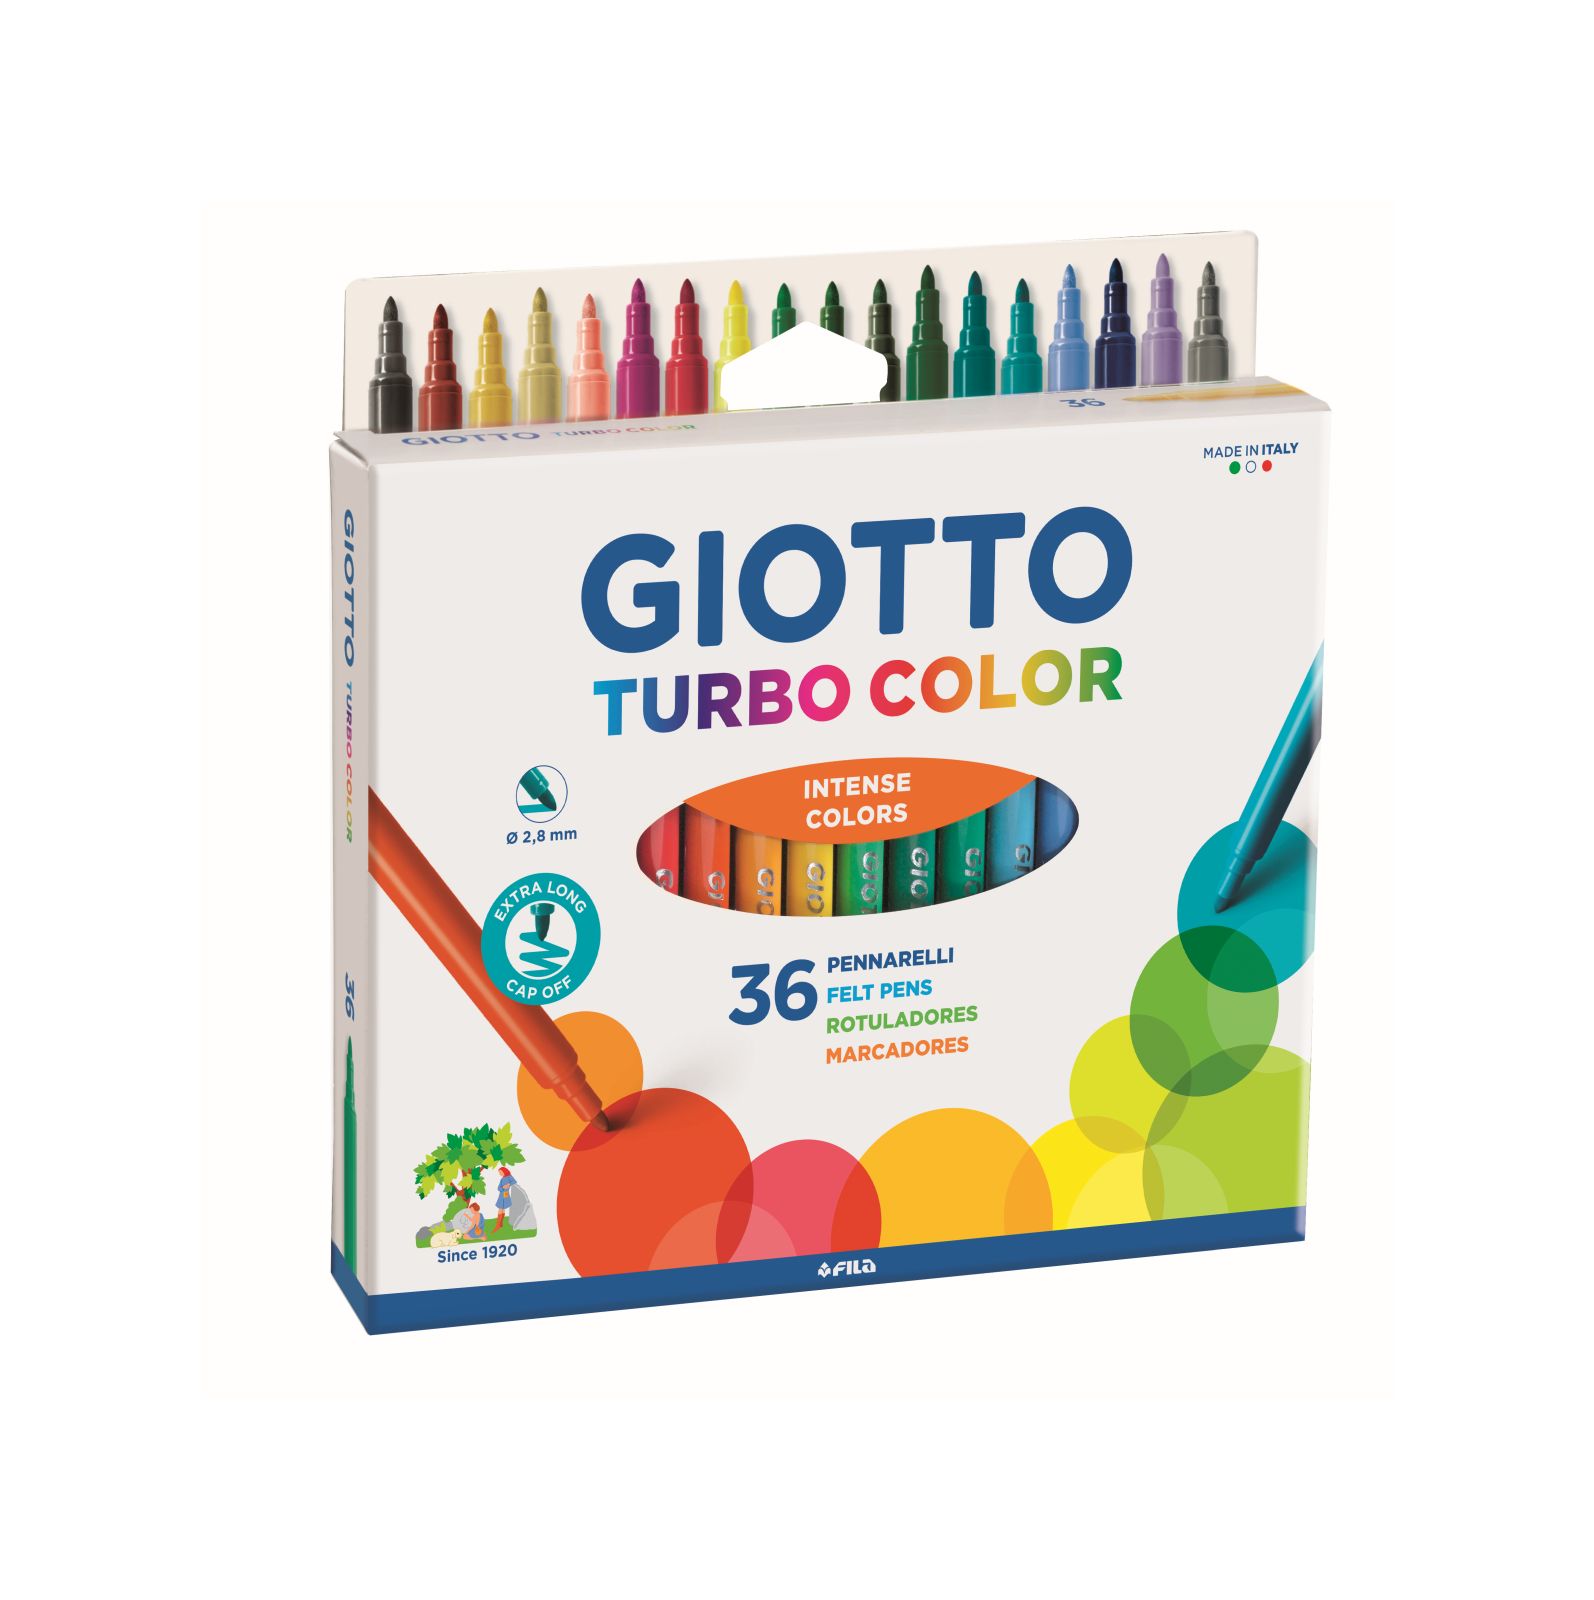 Giotto Turbo Color scatola da 36 pennarelli colorati 